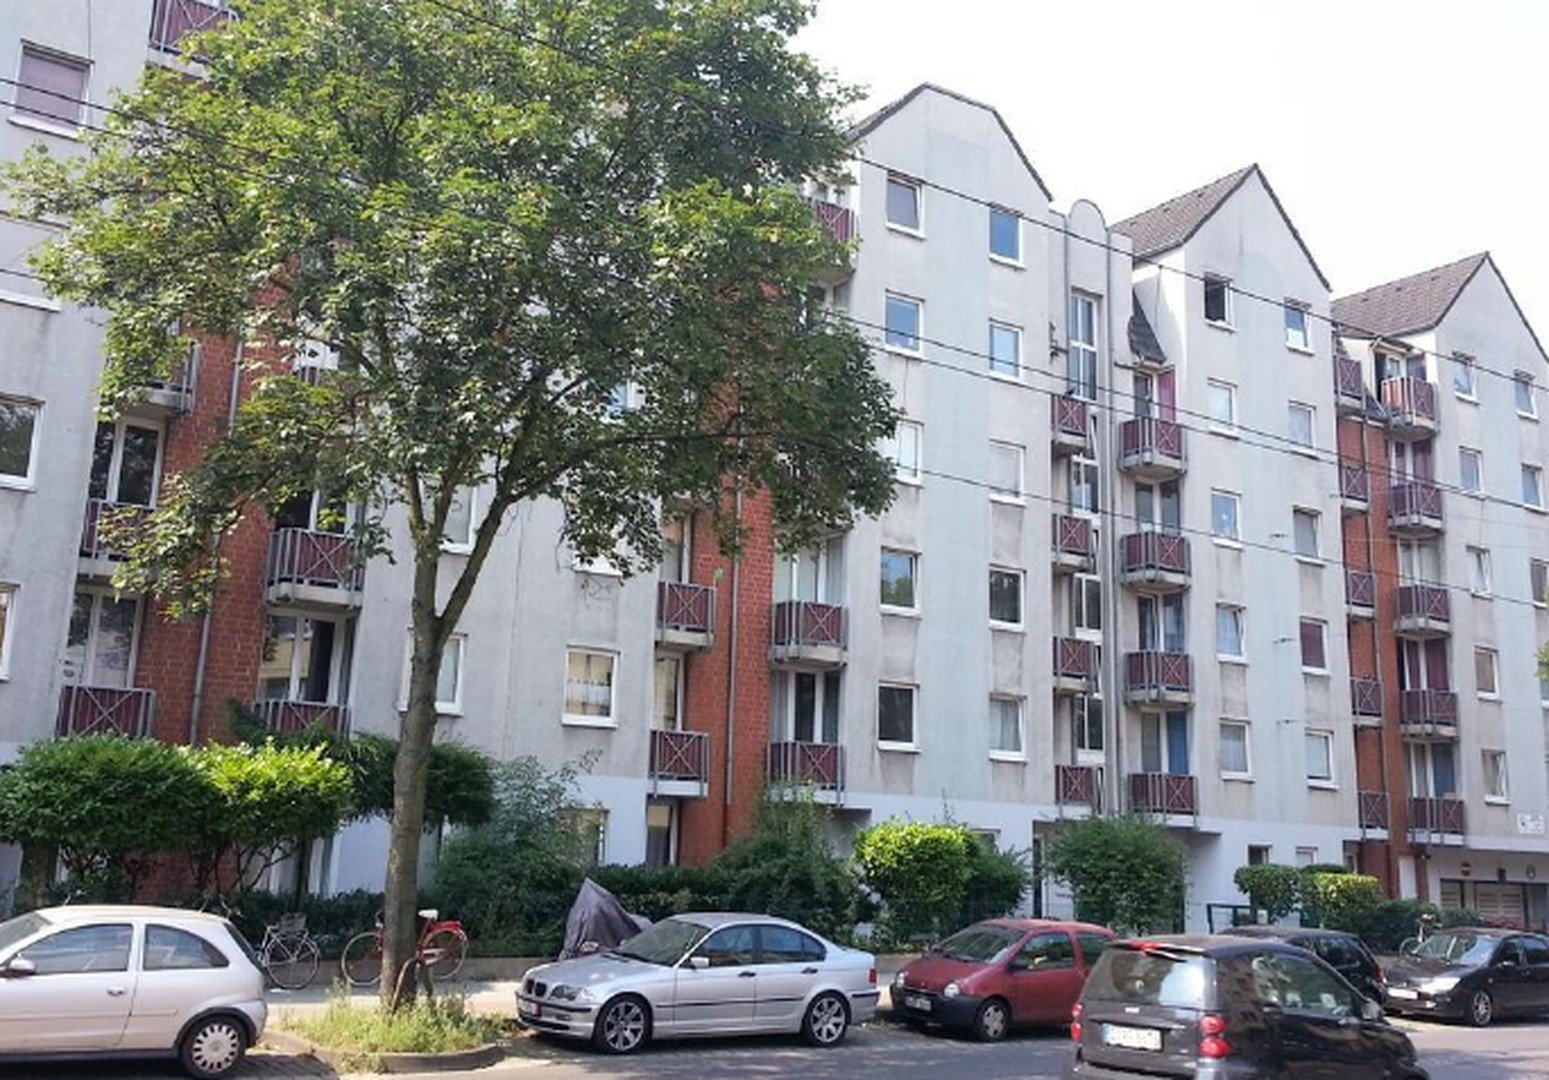 Schönes Studenten-Appartement in Düsseldorf